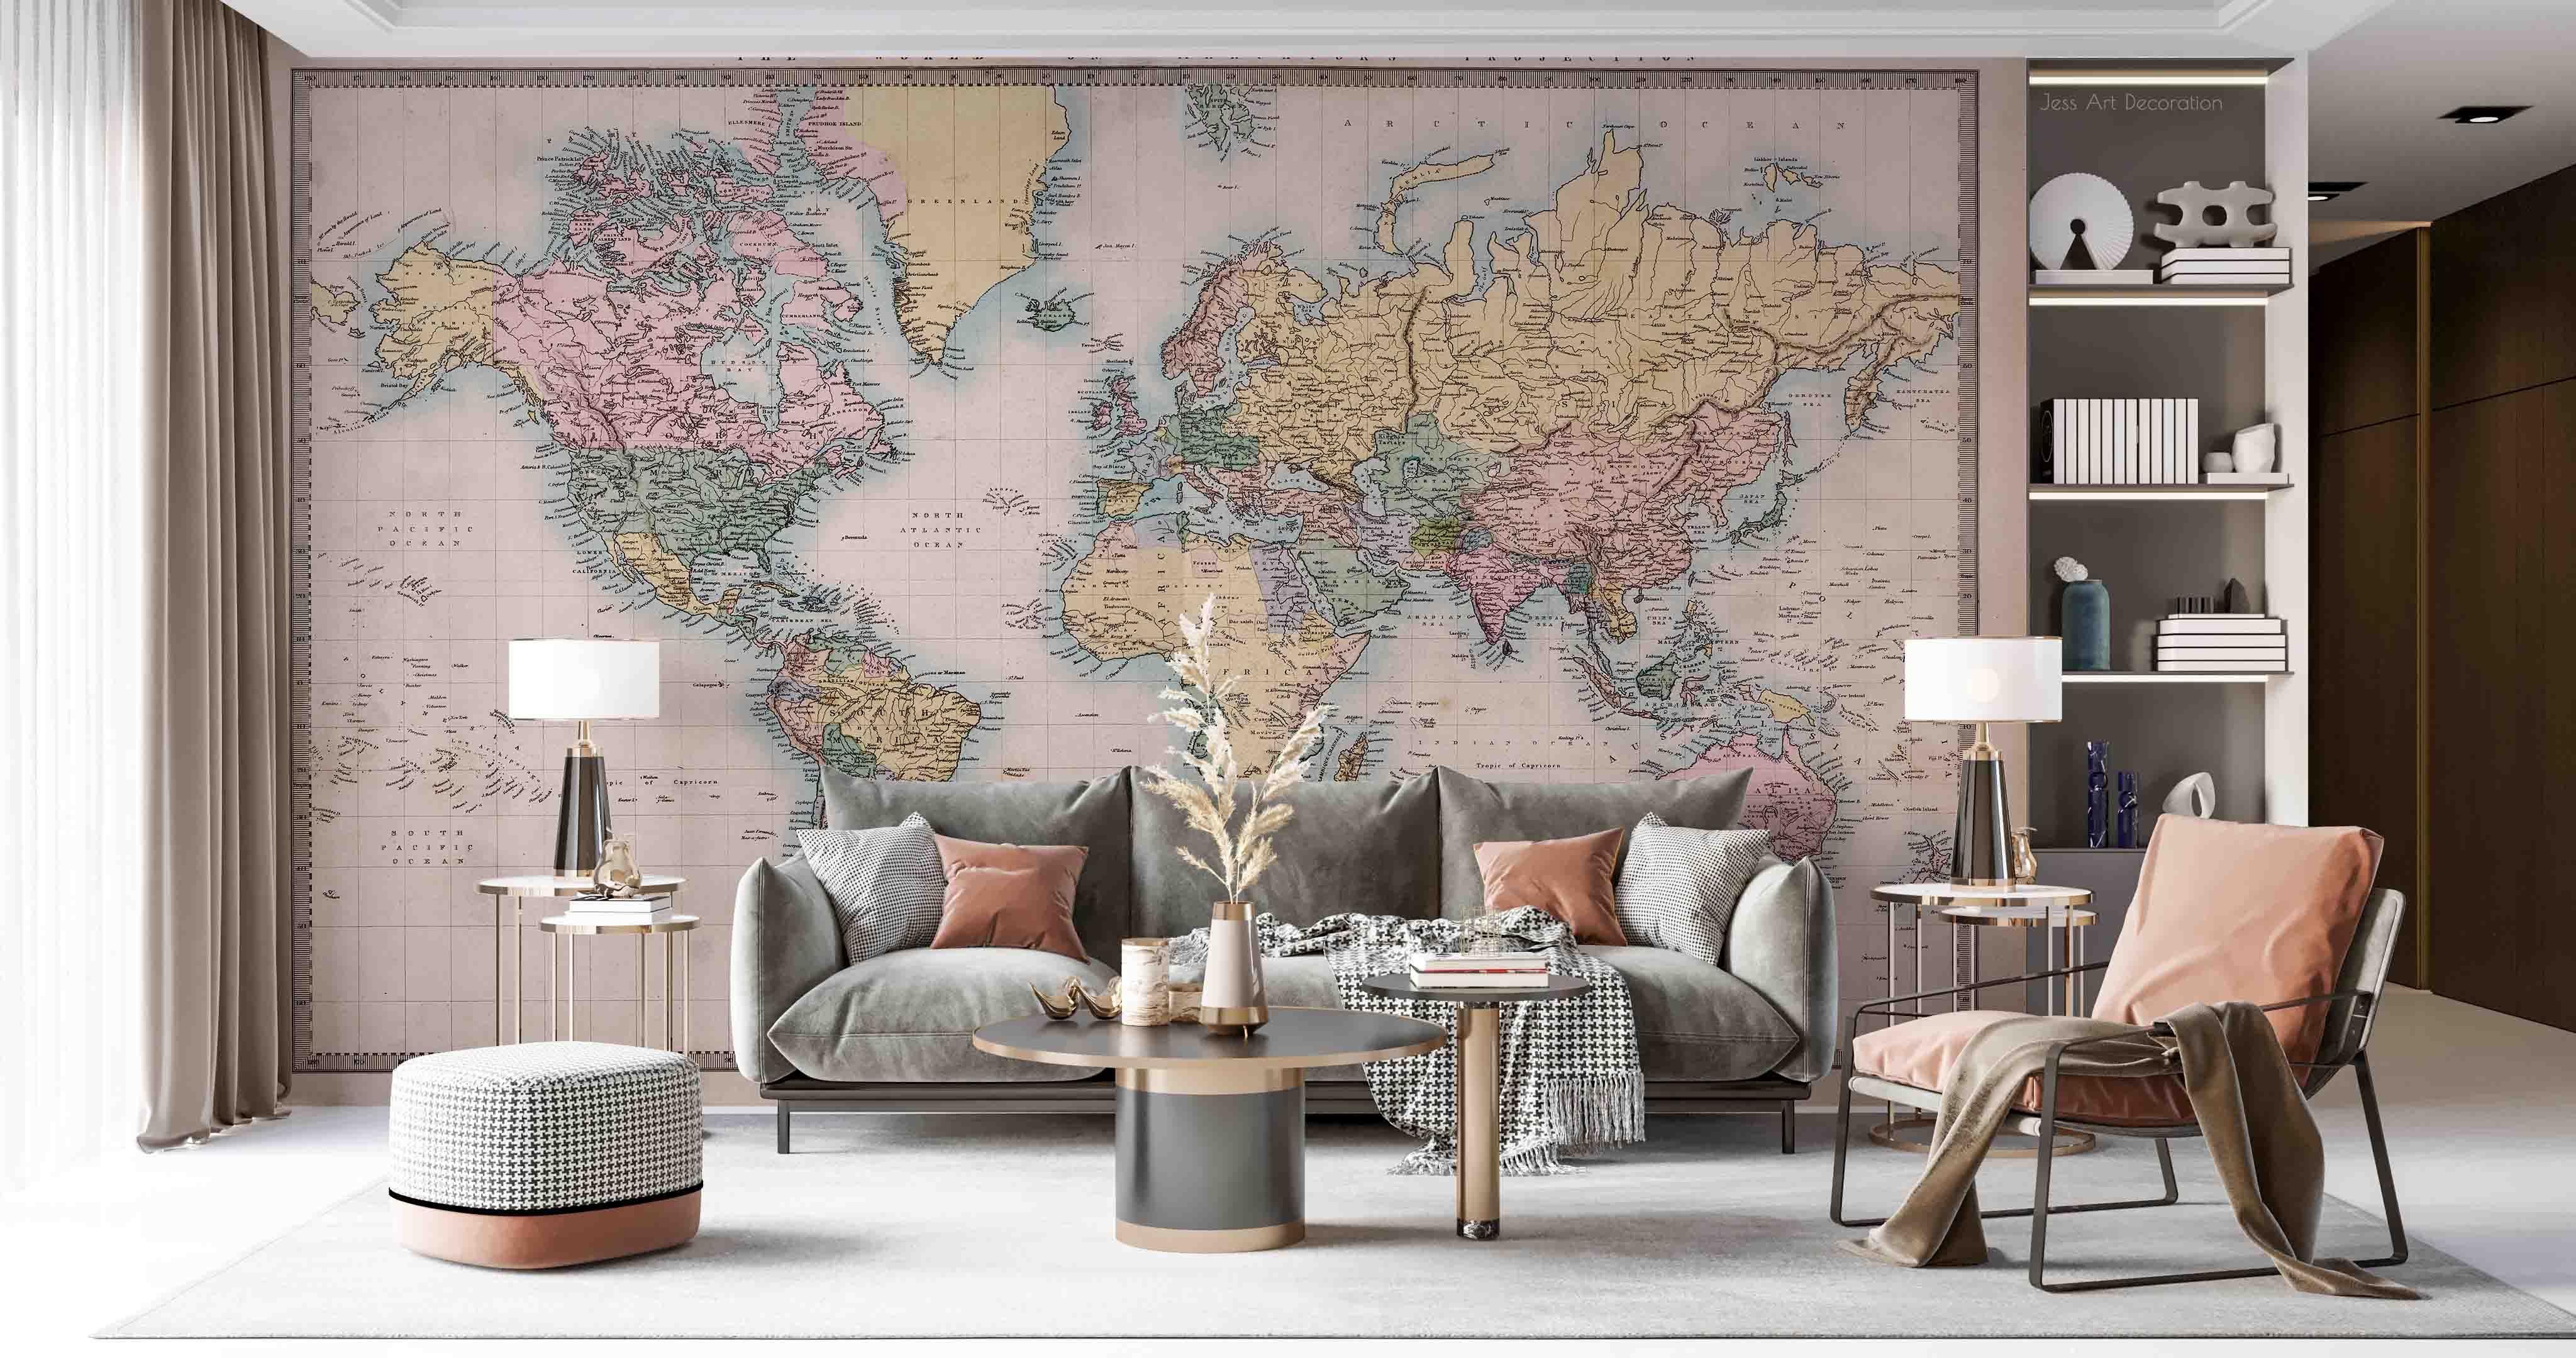 3D Retro World Map Wall Mural Wallpaper GD 2661- Jess Art Decoration